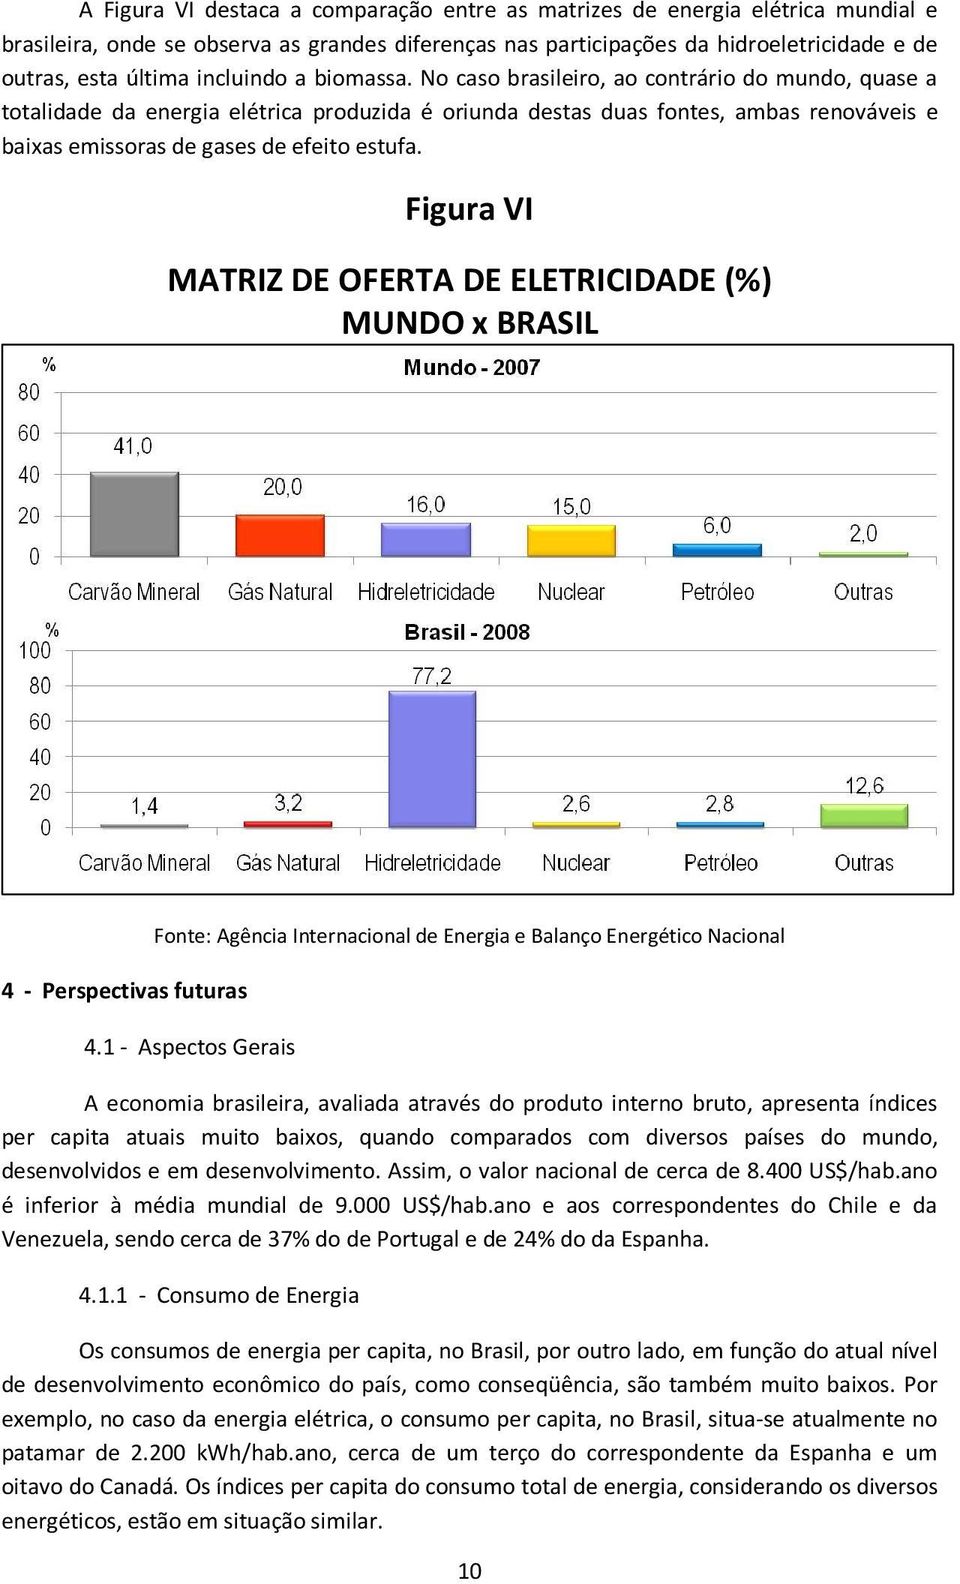 No caso brasileiro, ao contrário do mundo, quase a totalidade da energia elétrica produzida é oriunda destas duas fontes, ambas renováveis e baixas emissoras de gases de efeito estufa.